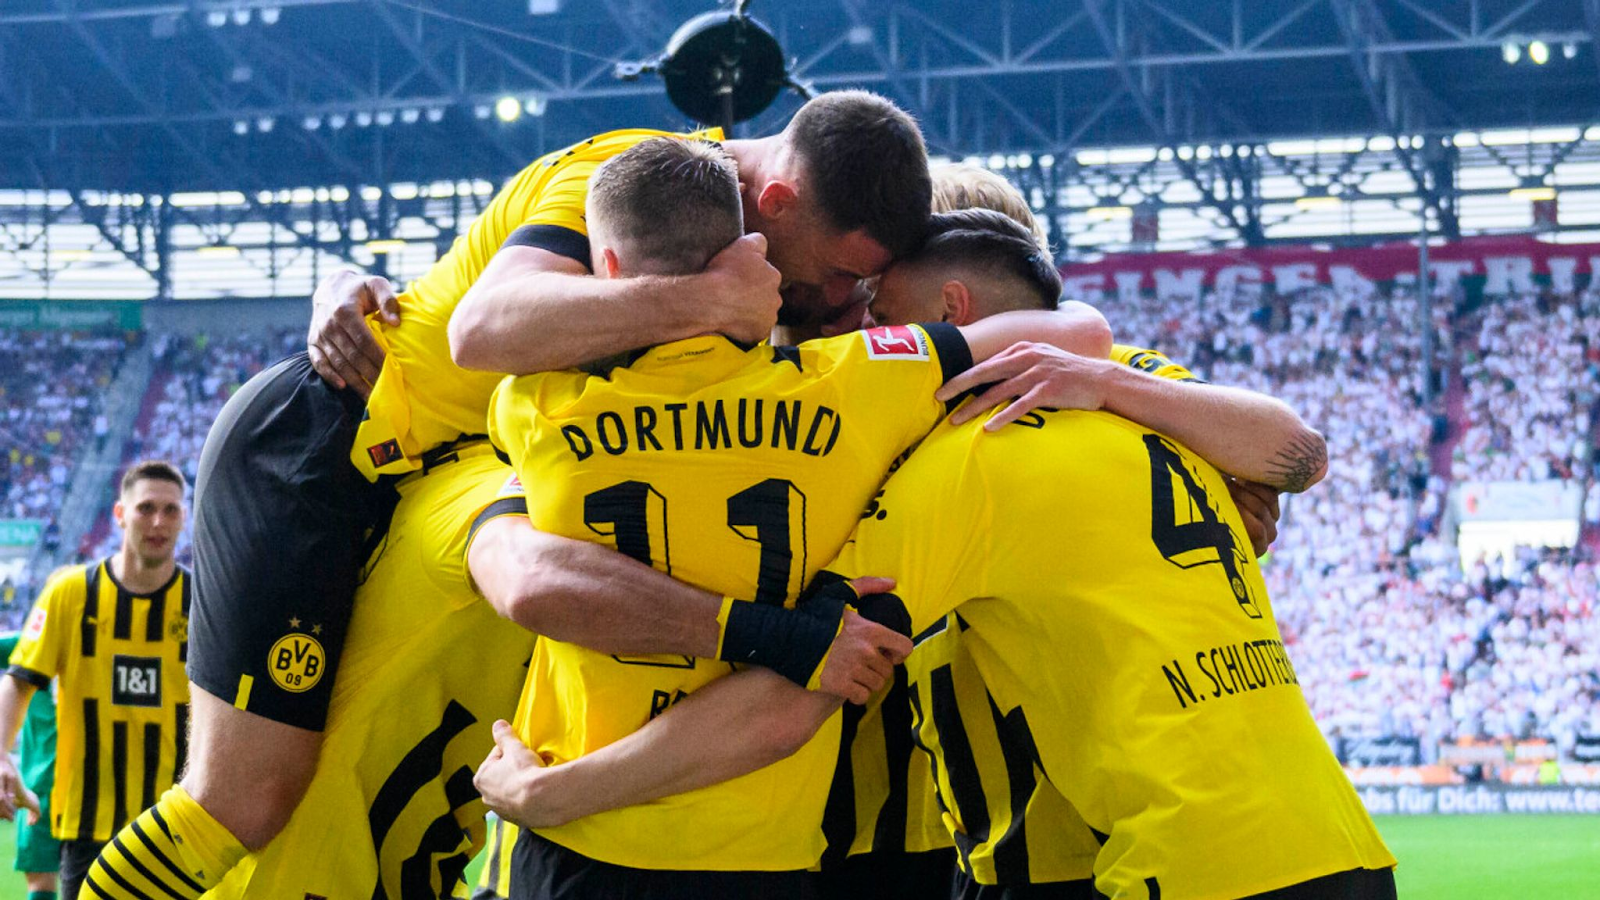 Thông tin soi keo Dortmund tại trang web của chúng tôi luôn cập nhật sớm